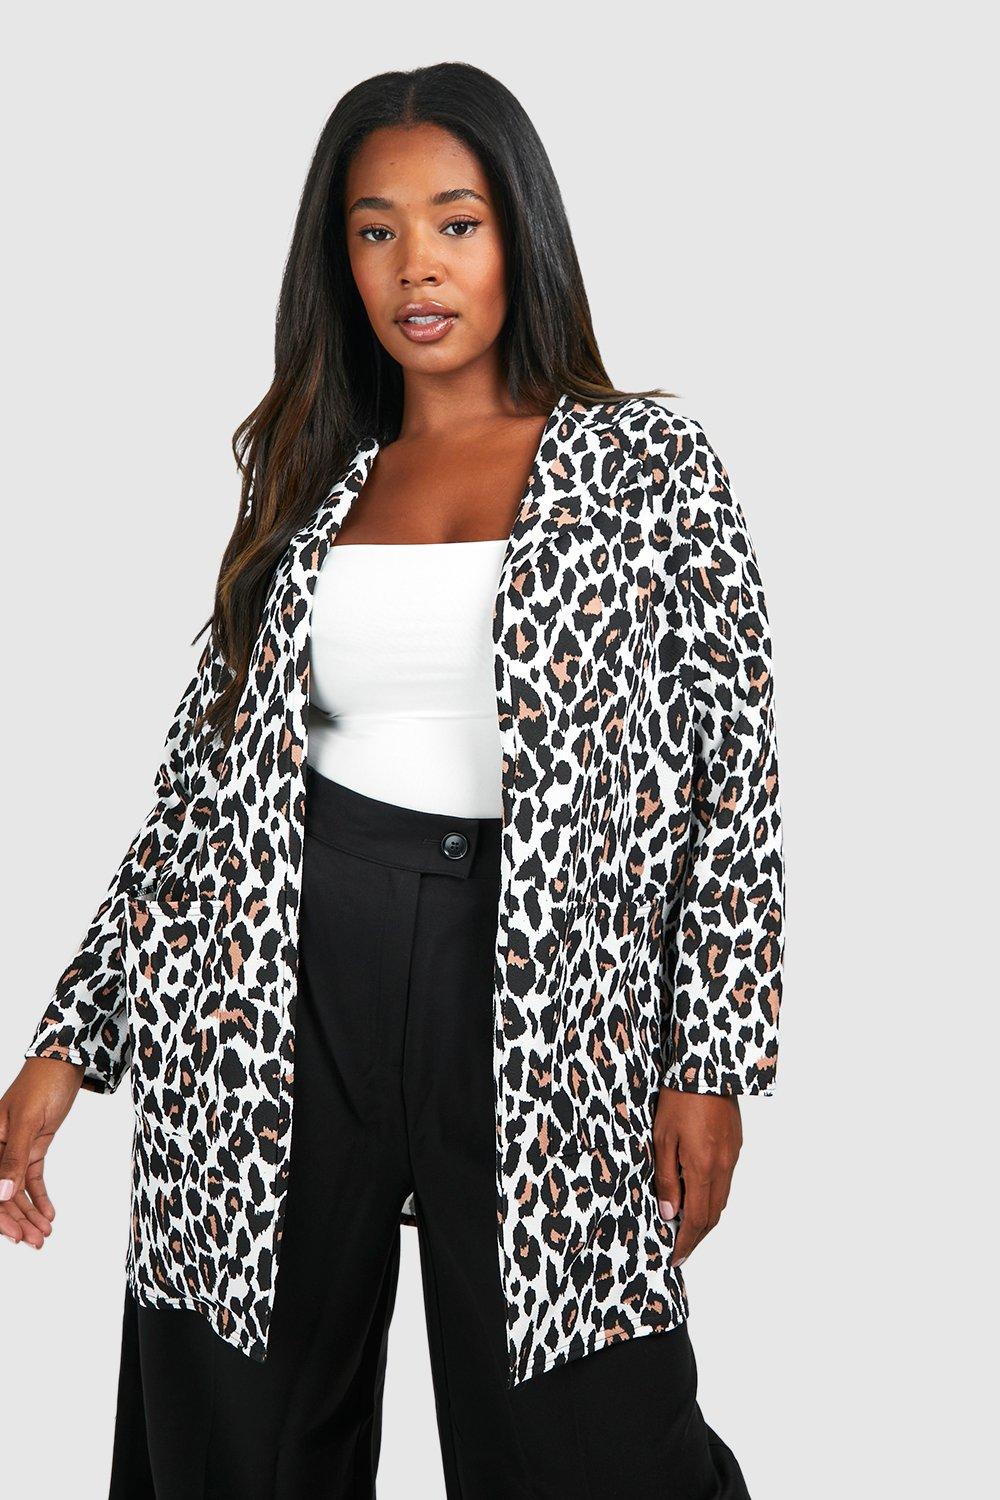 https://media.boohoo.com/i/boohoo/pzz68857_tan_xl/female-tan-plus-leopard-print-duster-coat